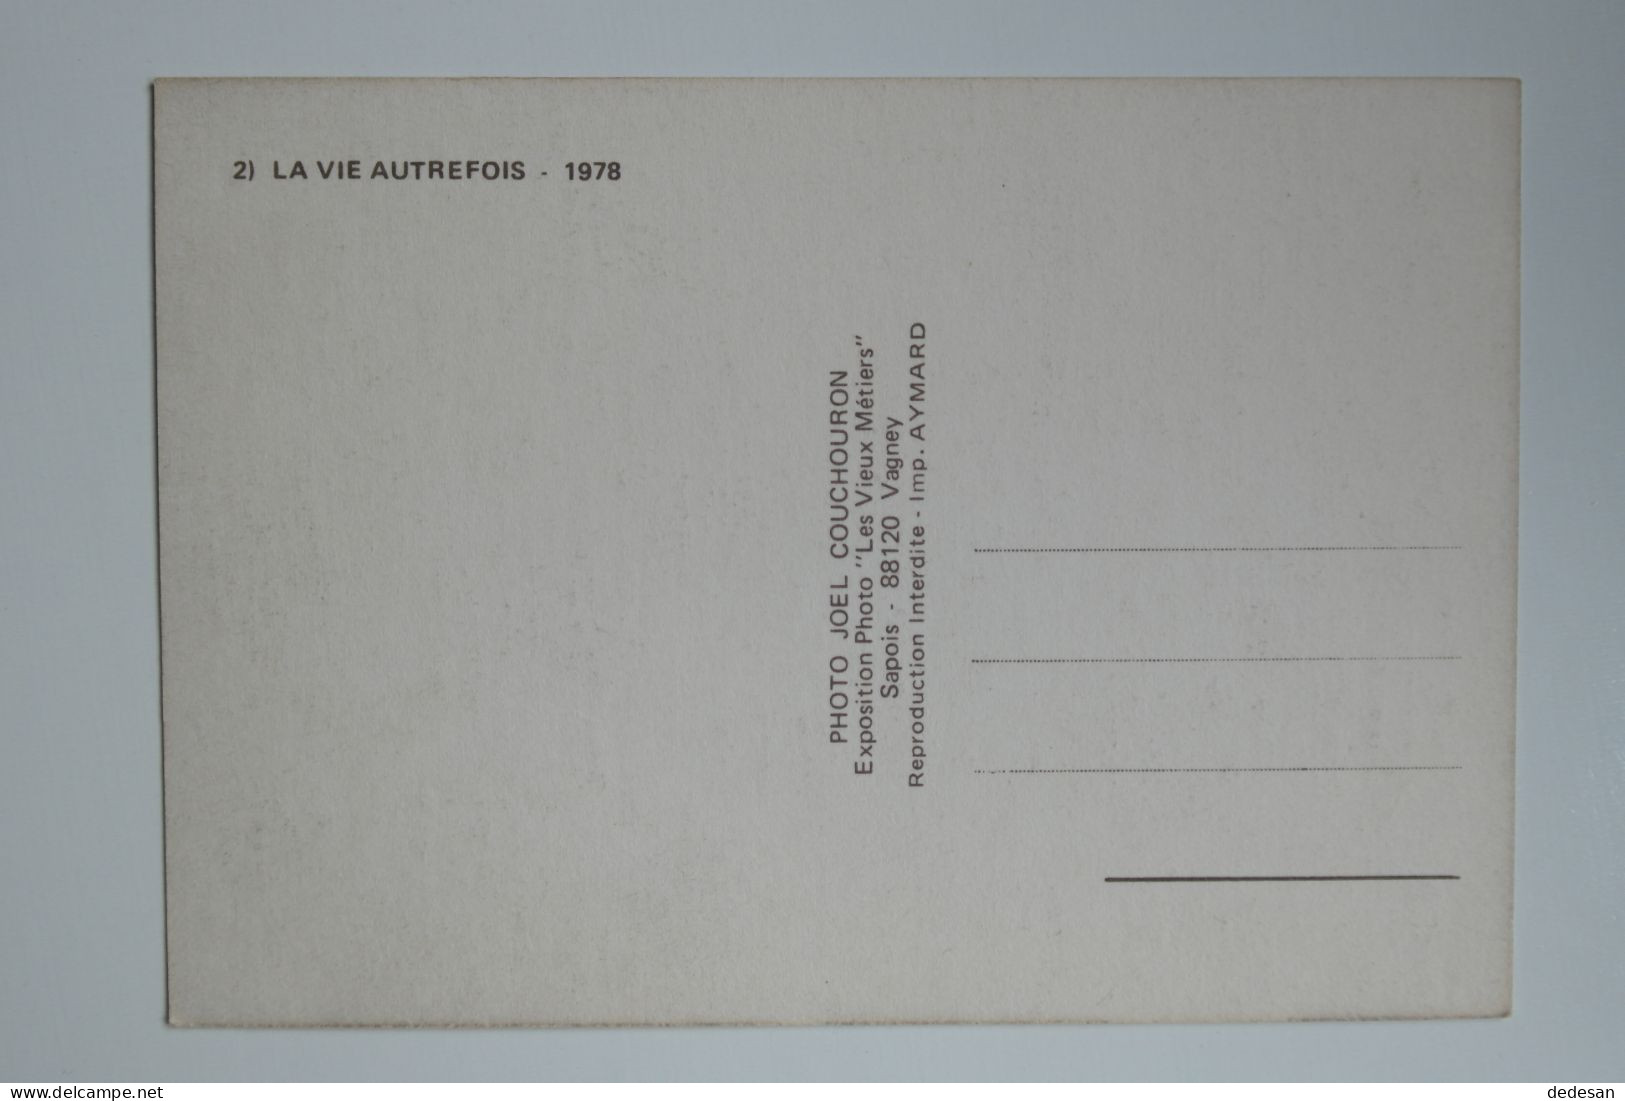 CPSM Grand Format 148x102 2) La Vie Autrefois 1978 Editions Les Vieux Métiers - CHA03 - Bauern